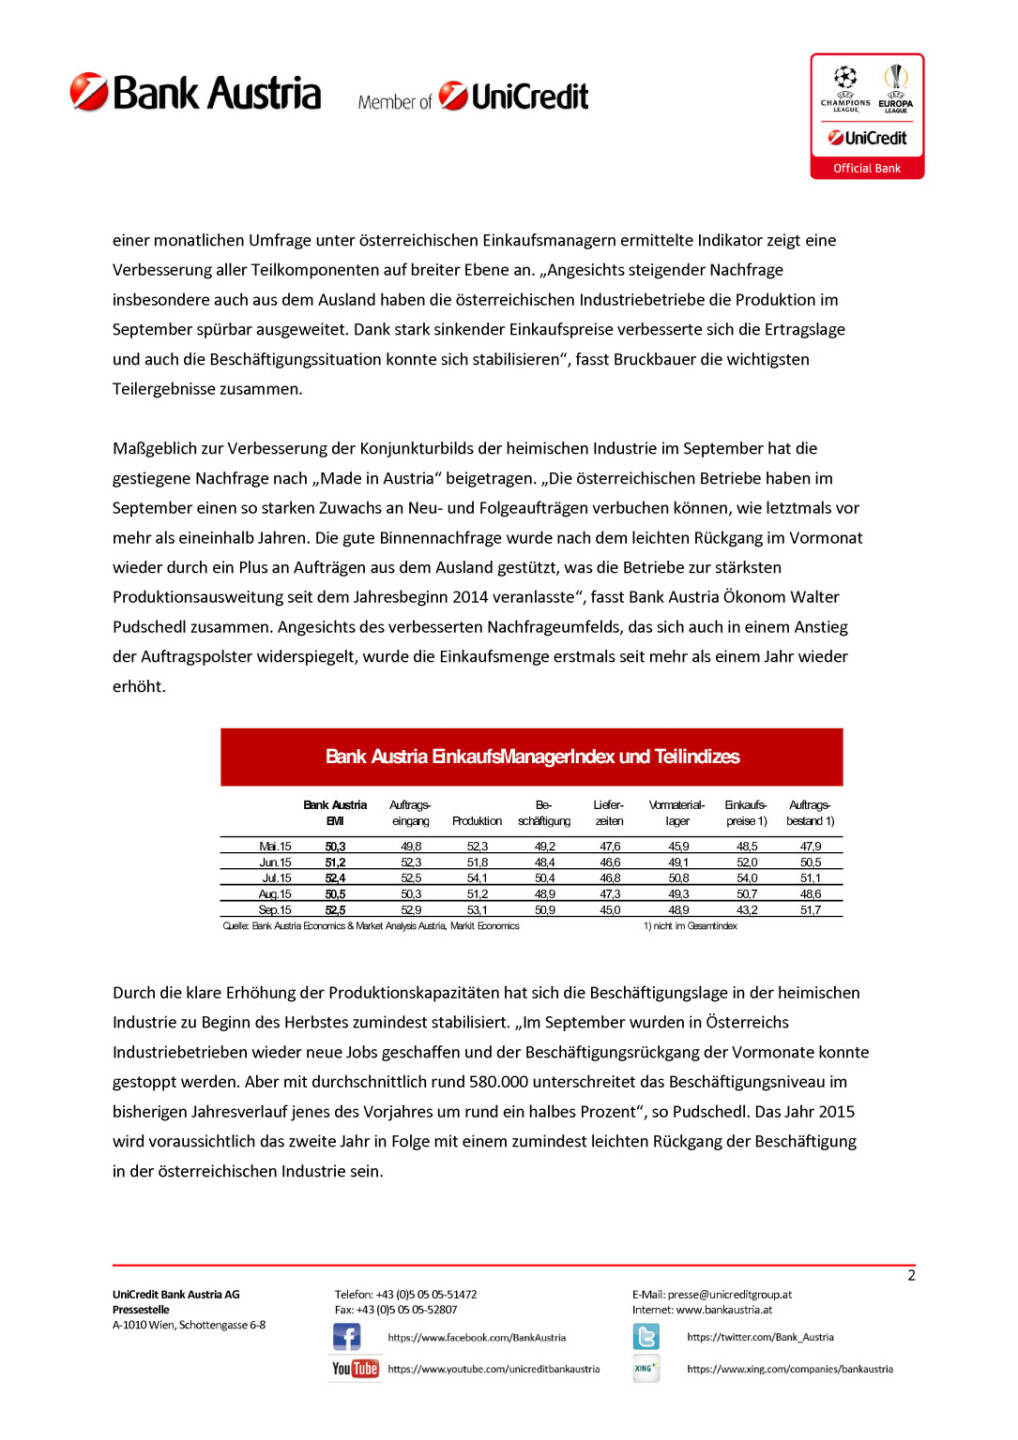 Bank Austria EinkaufsManagerIndex im September, Seite 2/3, komplettes Dokument unter http://boerse-social.com/static/uploads/file_391_bank_austria_einkaufsmanagerindex_im_september.pdf